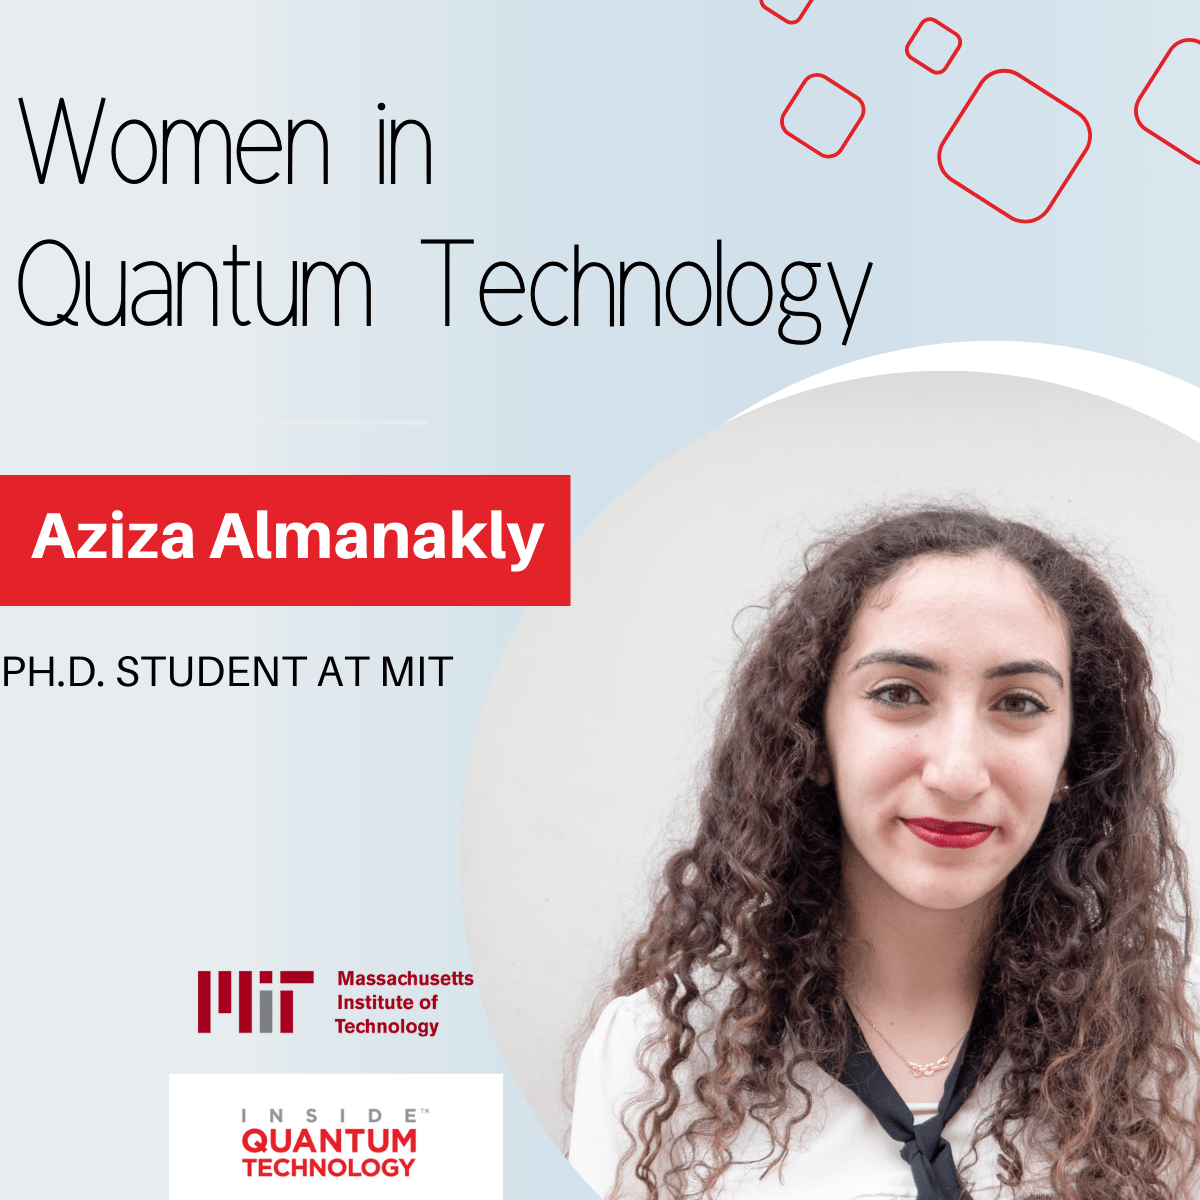 عزيزة المناقلي، طالبة دراسات عليا في معهد ماساتشوستس للتكنولوجيا، تناقش تعليمها وأبحاثها في مجال الحوسبة الكمومية والضوئيات.